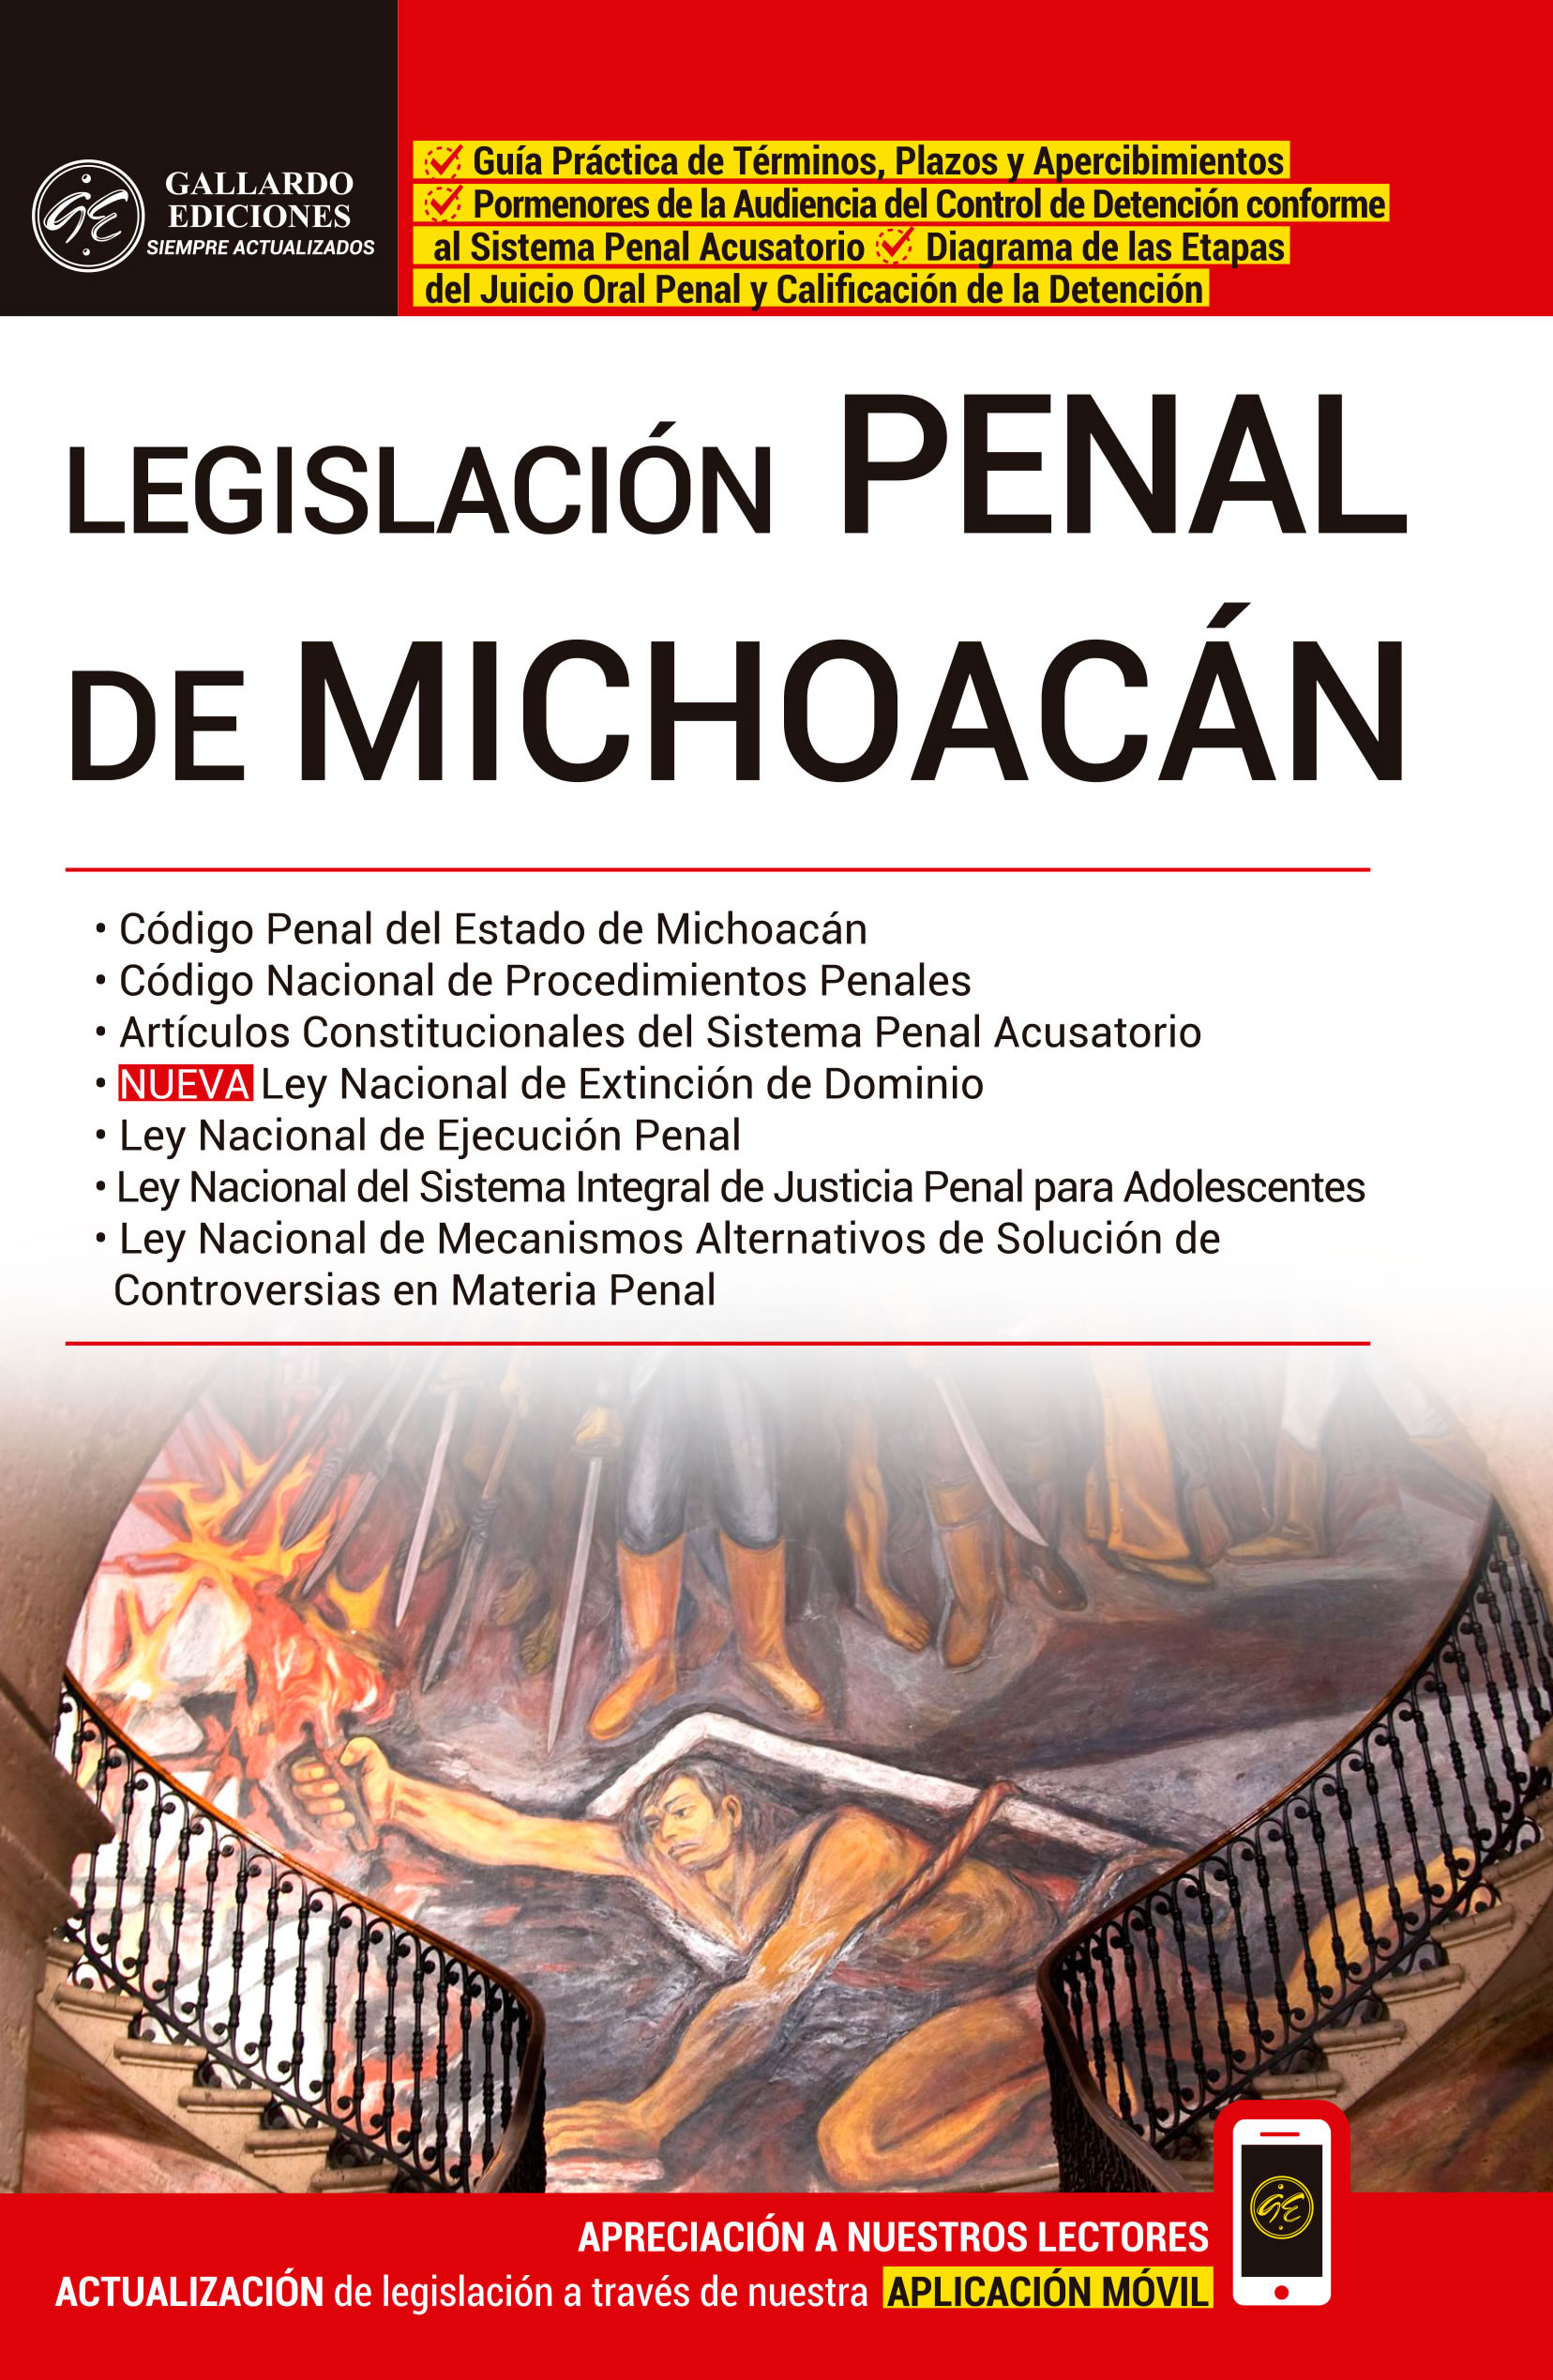 Legislación Penal de Michoacán 2020 Gallardo Ediciones